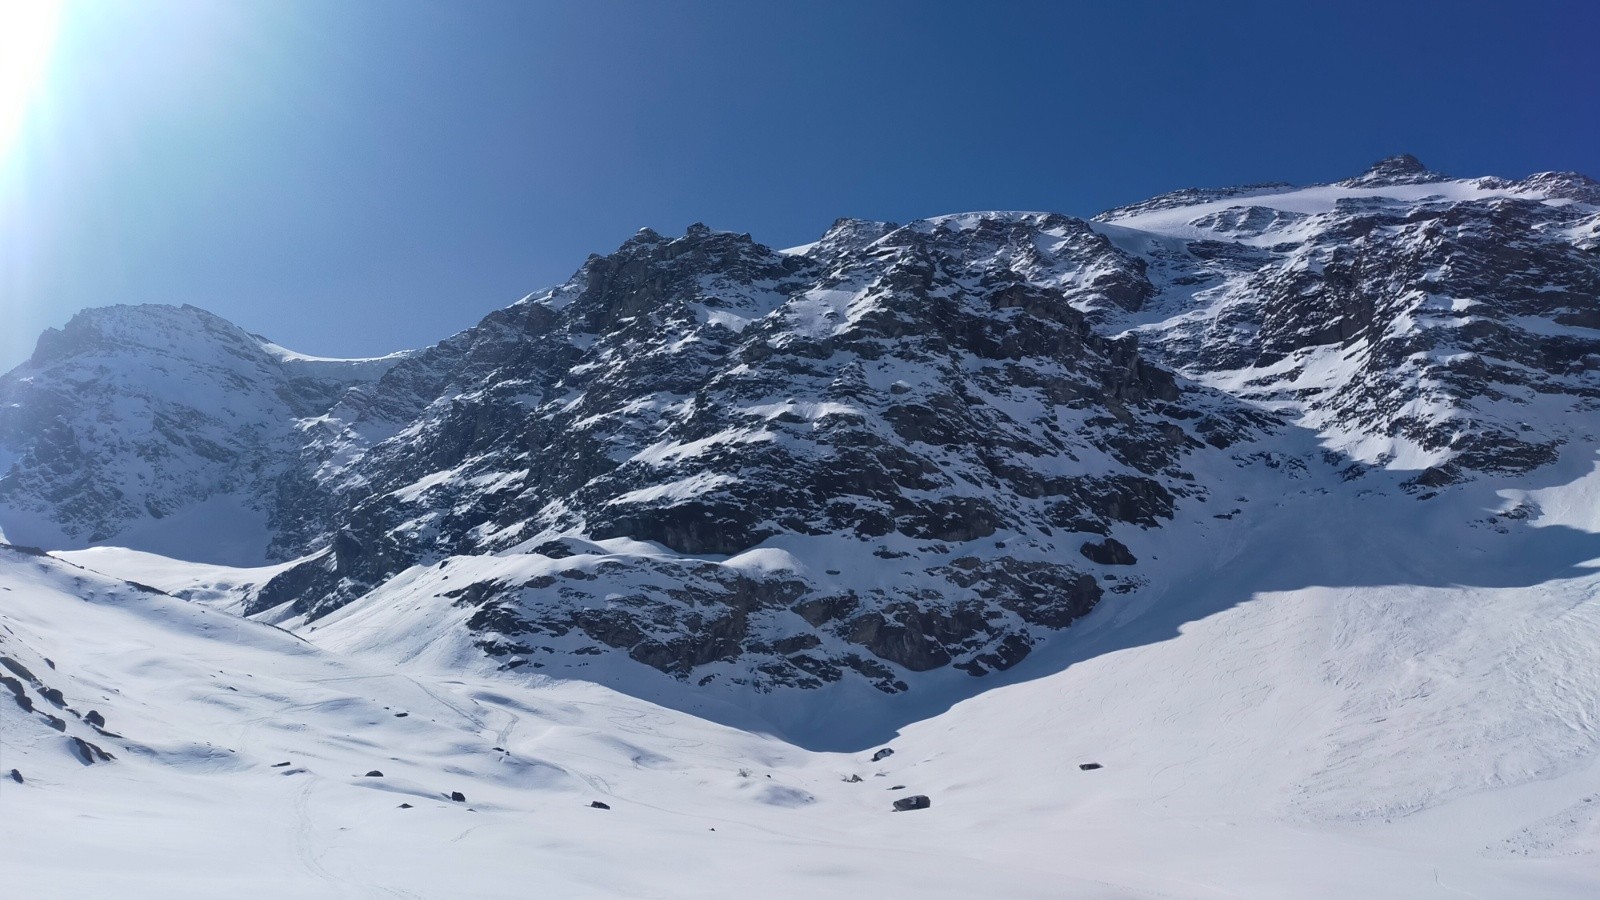  Fin de l'itinéraire de descente de l'Albaron par le glacier sup du Vallonnet bien sec (goulet sur la droite)